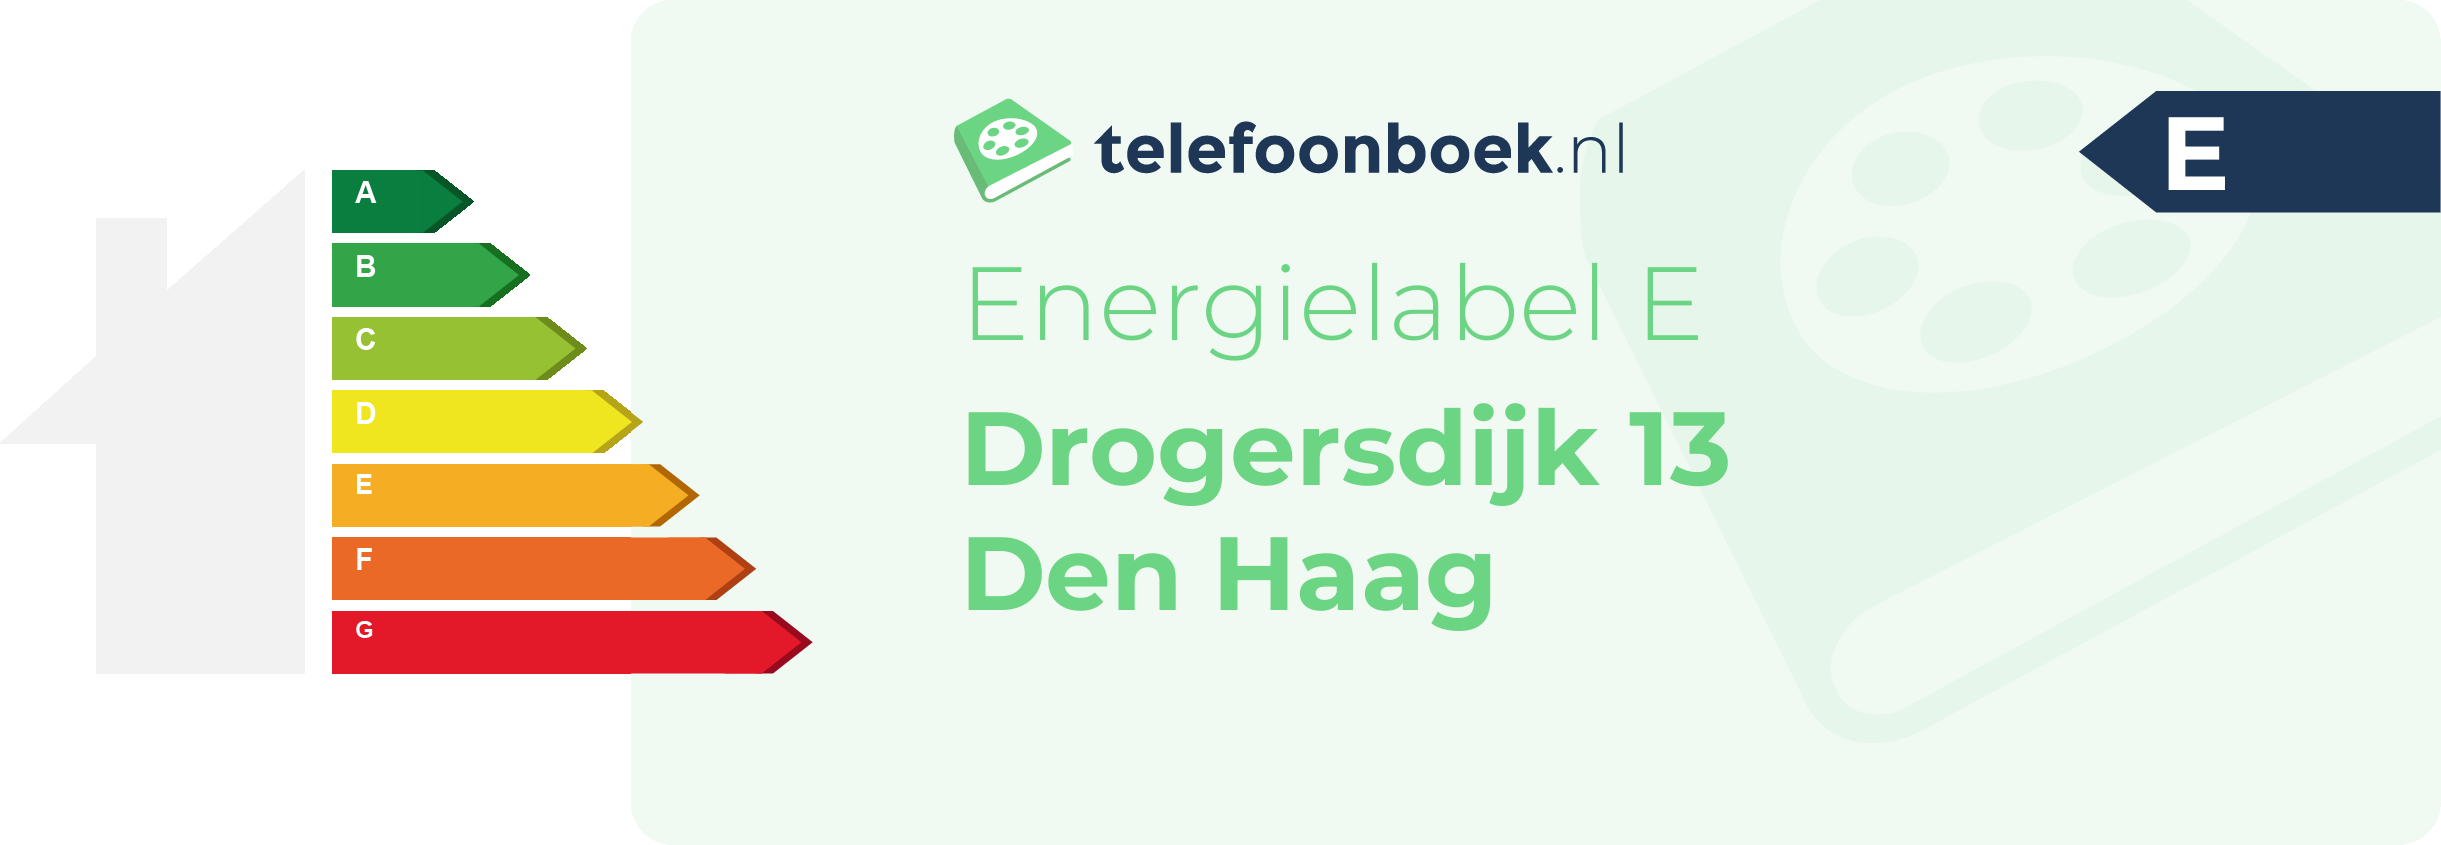 Energielabel Drogersdijk 13 Den Haag